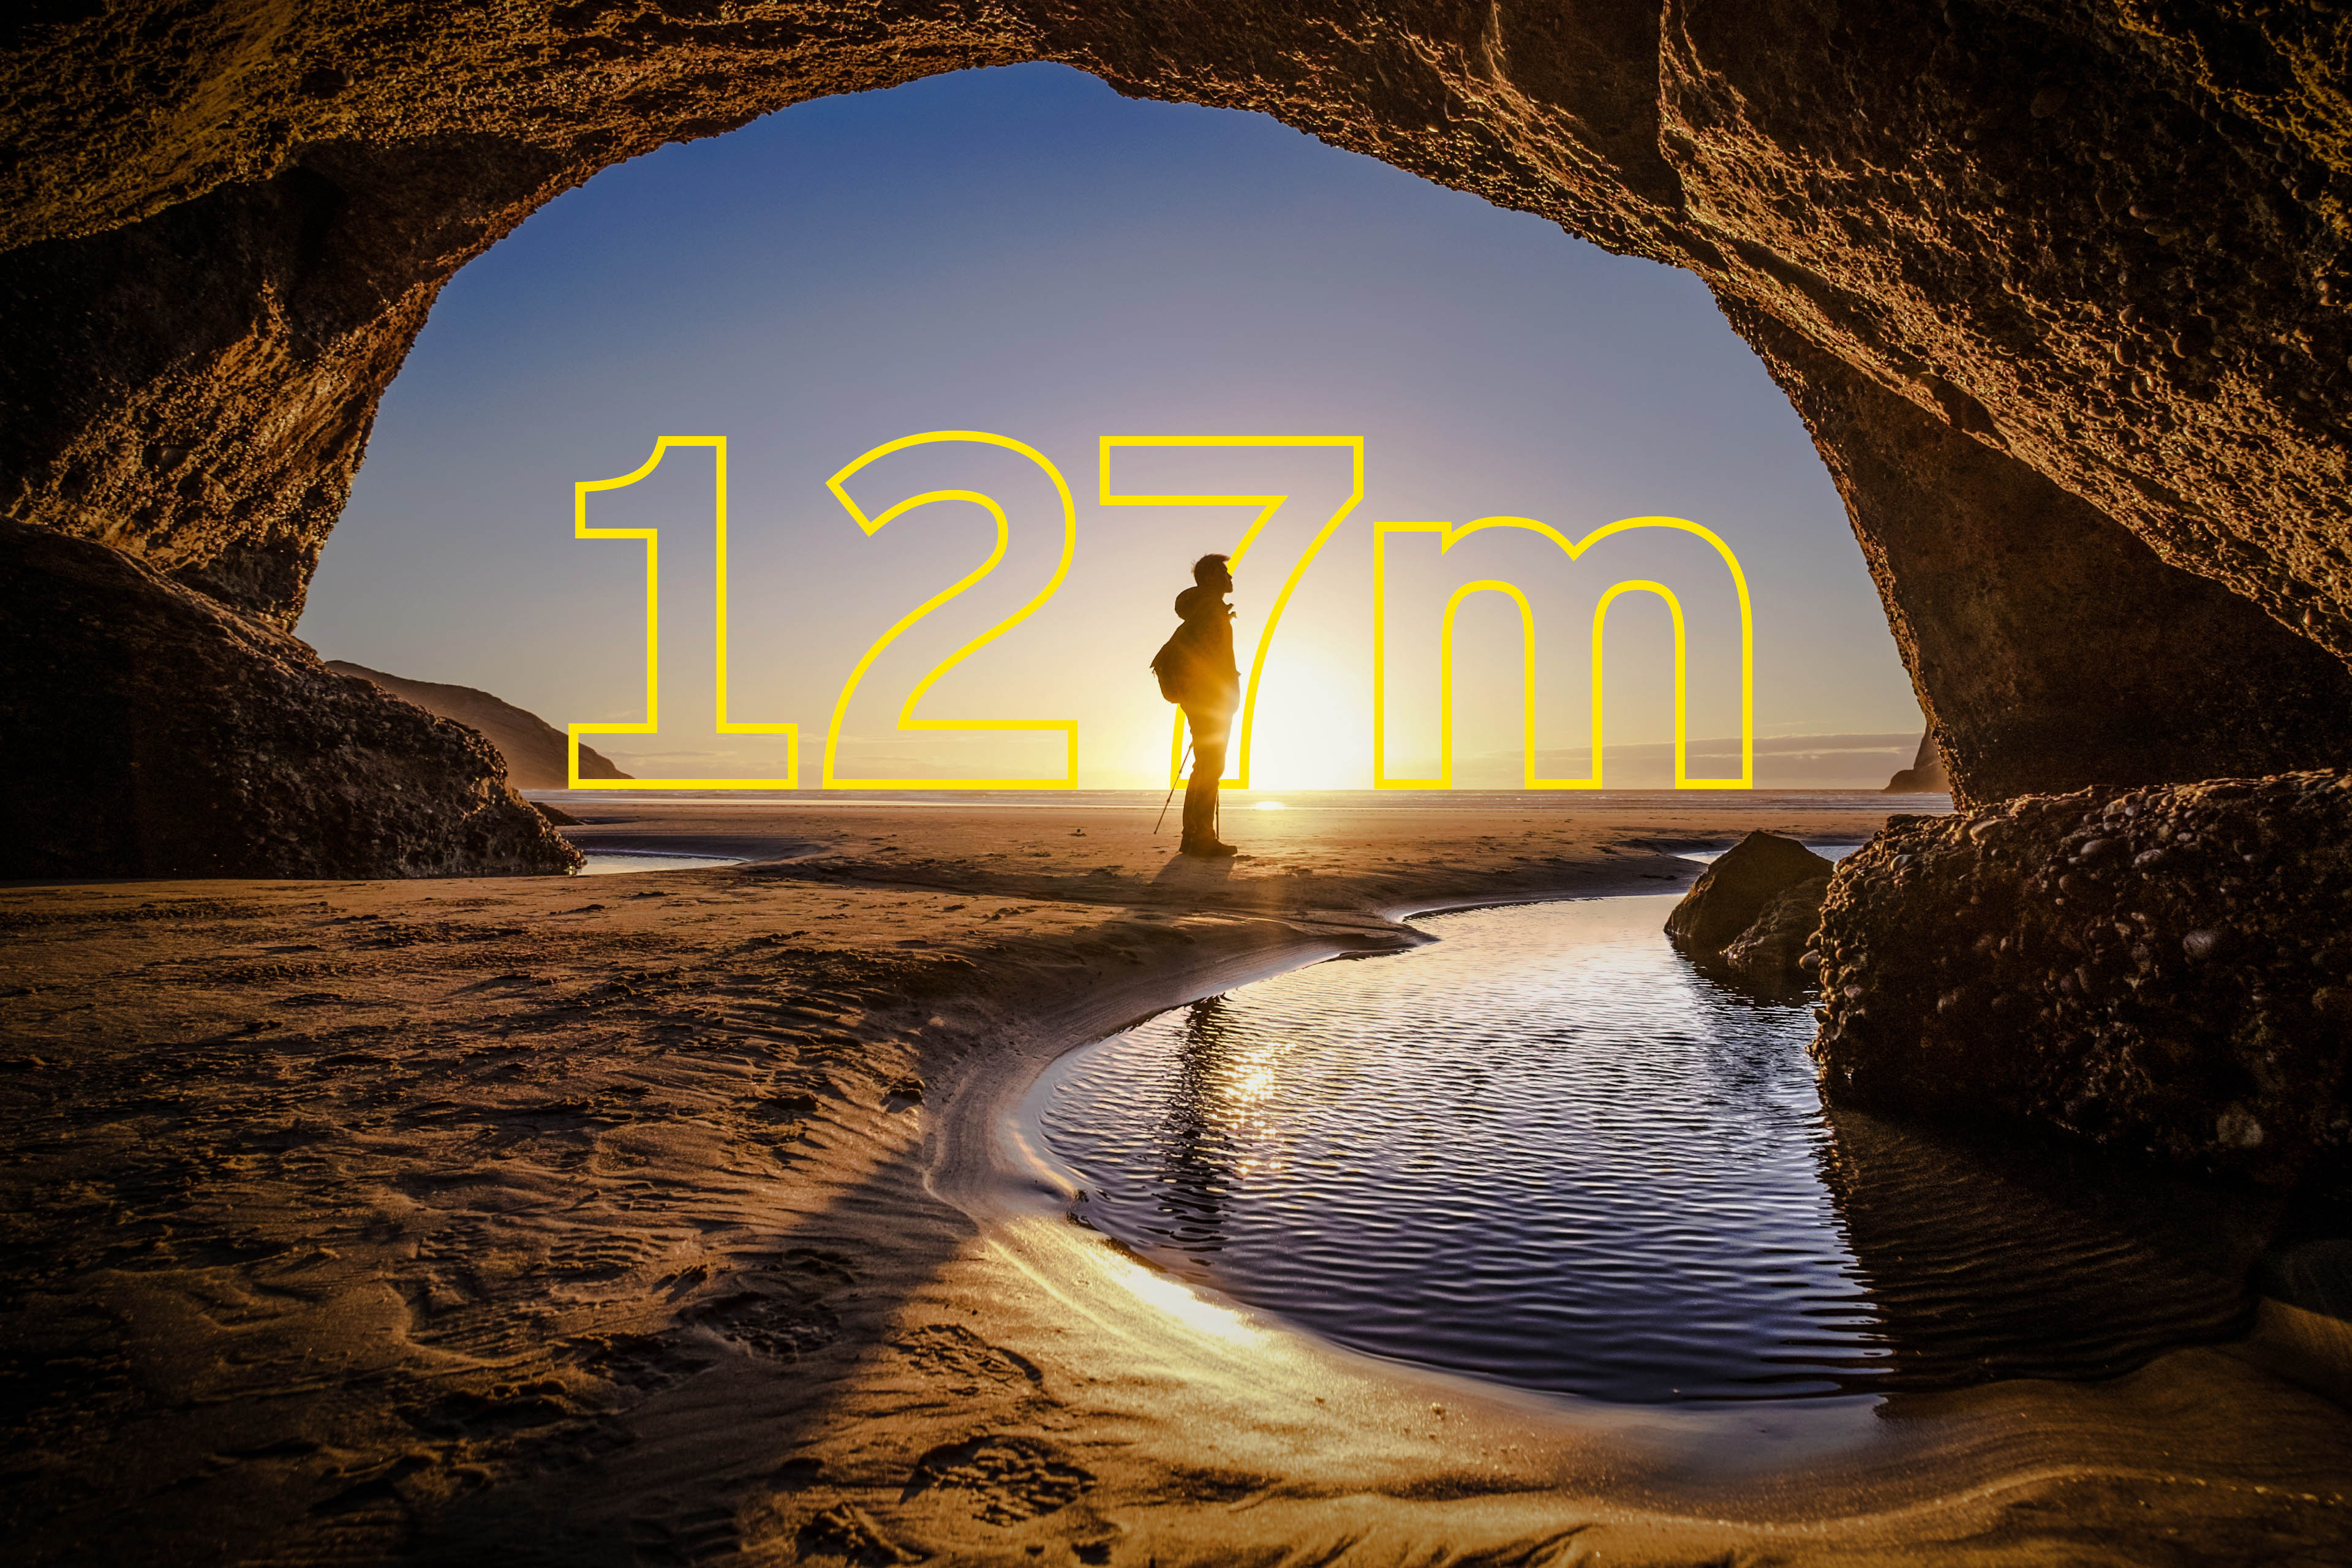 Joven parado en una salida de una cueva en Nueva Zelanda - superpuesto se lee un texto amarillo que dice 127m